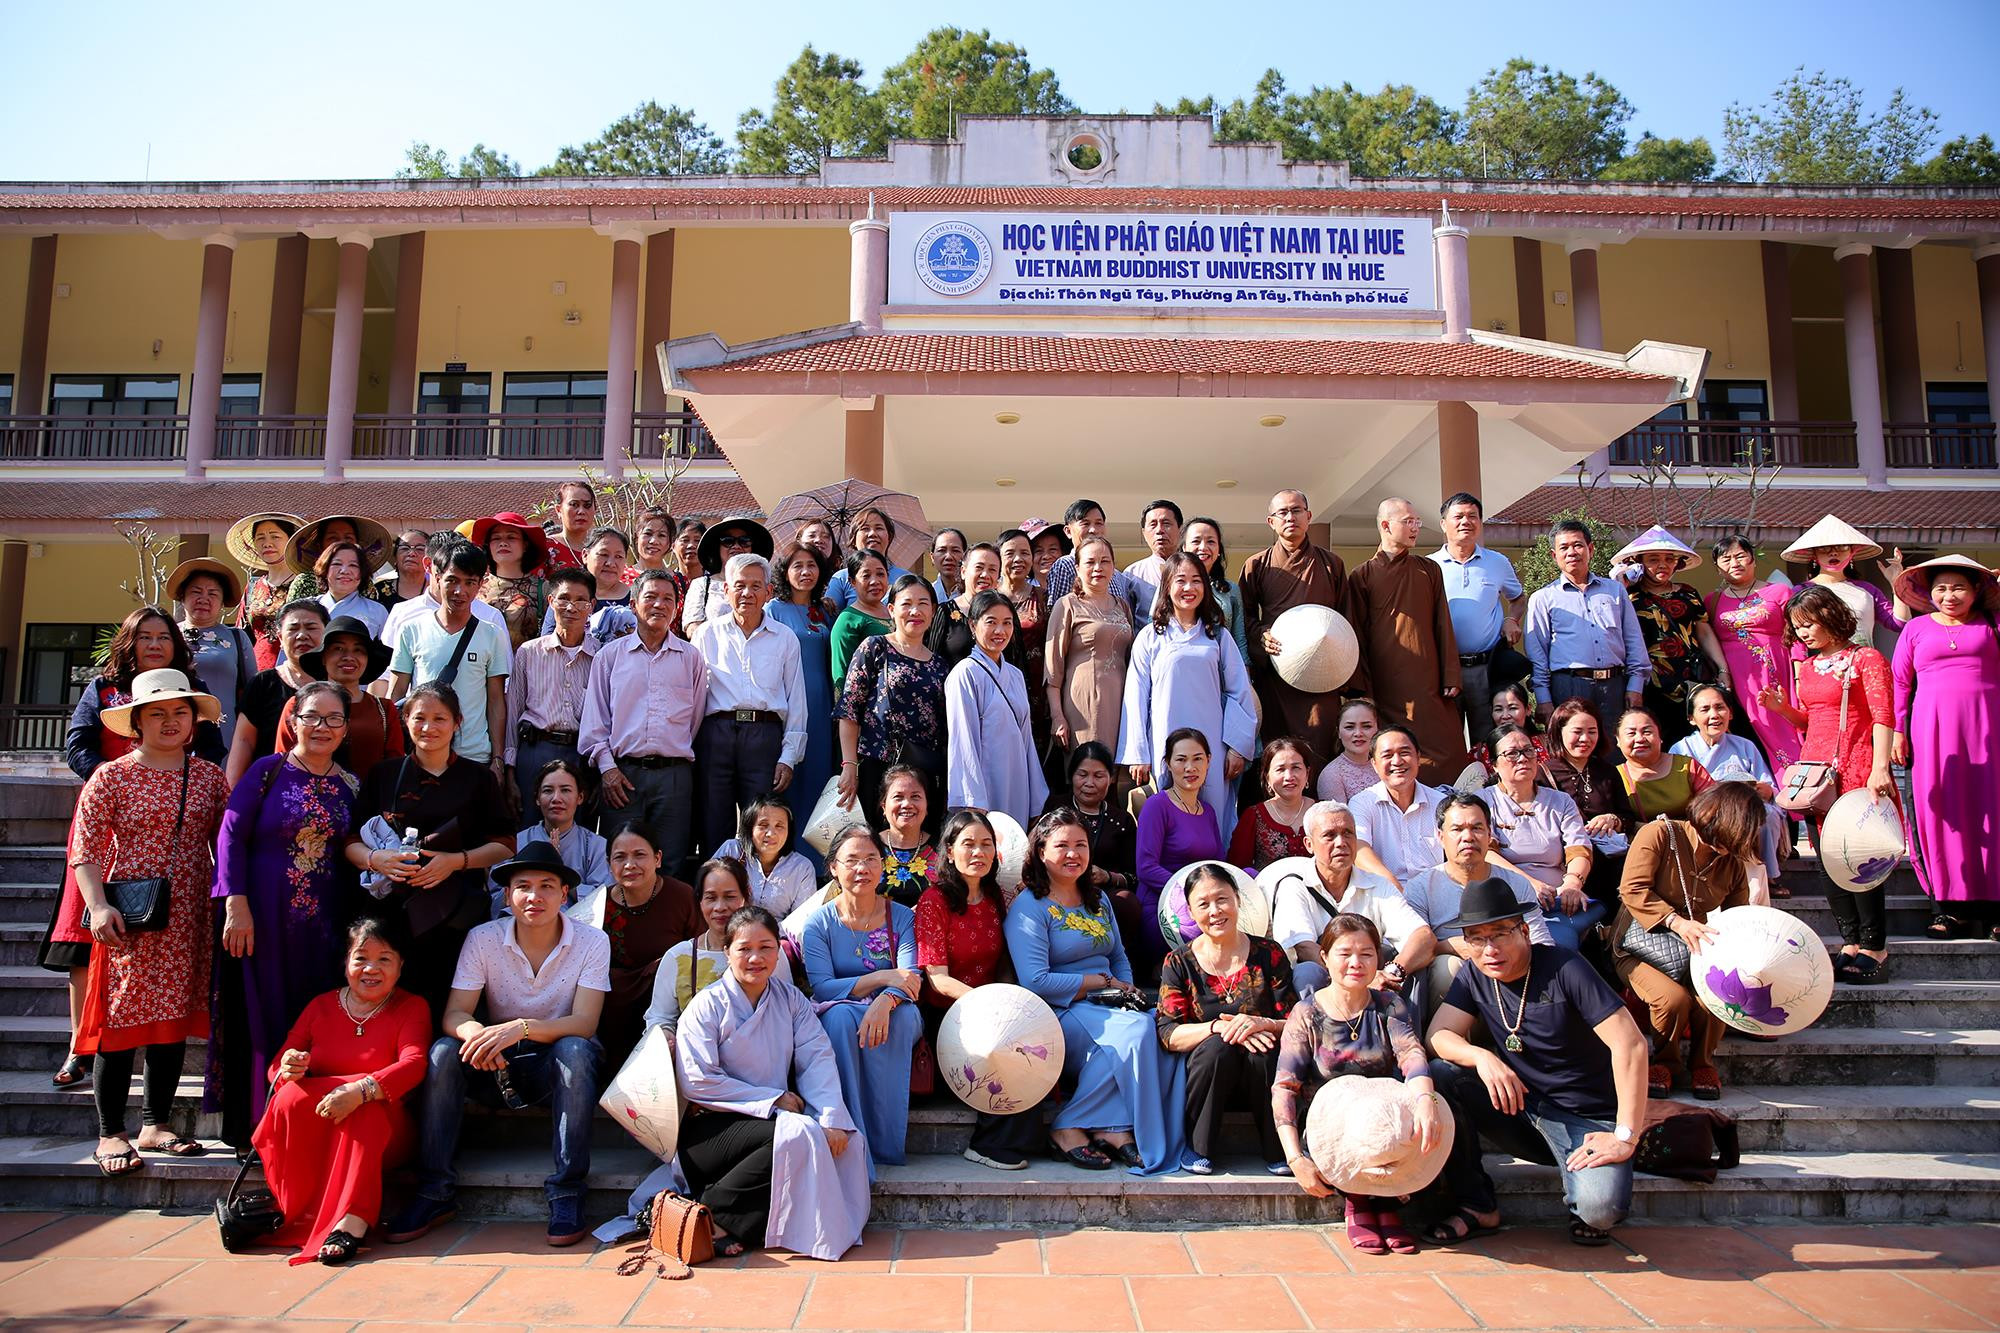 Trong suốt 20 năm qua, Học viện phật giáo Việt Nam tại Huế đã đào tạo được 9 khóa với hơn 1000 Tăng Ni sinh tốt nghiệp cử nhân Phật học. Có 30 Tăng Ni sinh xuất thân từ Học viện hiện đã tốt nghiệp Tiến sỹ Phật học; phần lớn các Tăng Ni sinh tốt nghiệp tại Học viện hiện đang hoằng pháp, đảm trách các phật sự trọng yếu tại  các Ban, Viện Trung ương, tại các địa phương trong cả nước cũng như nước ngoài.    